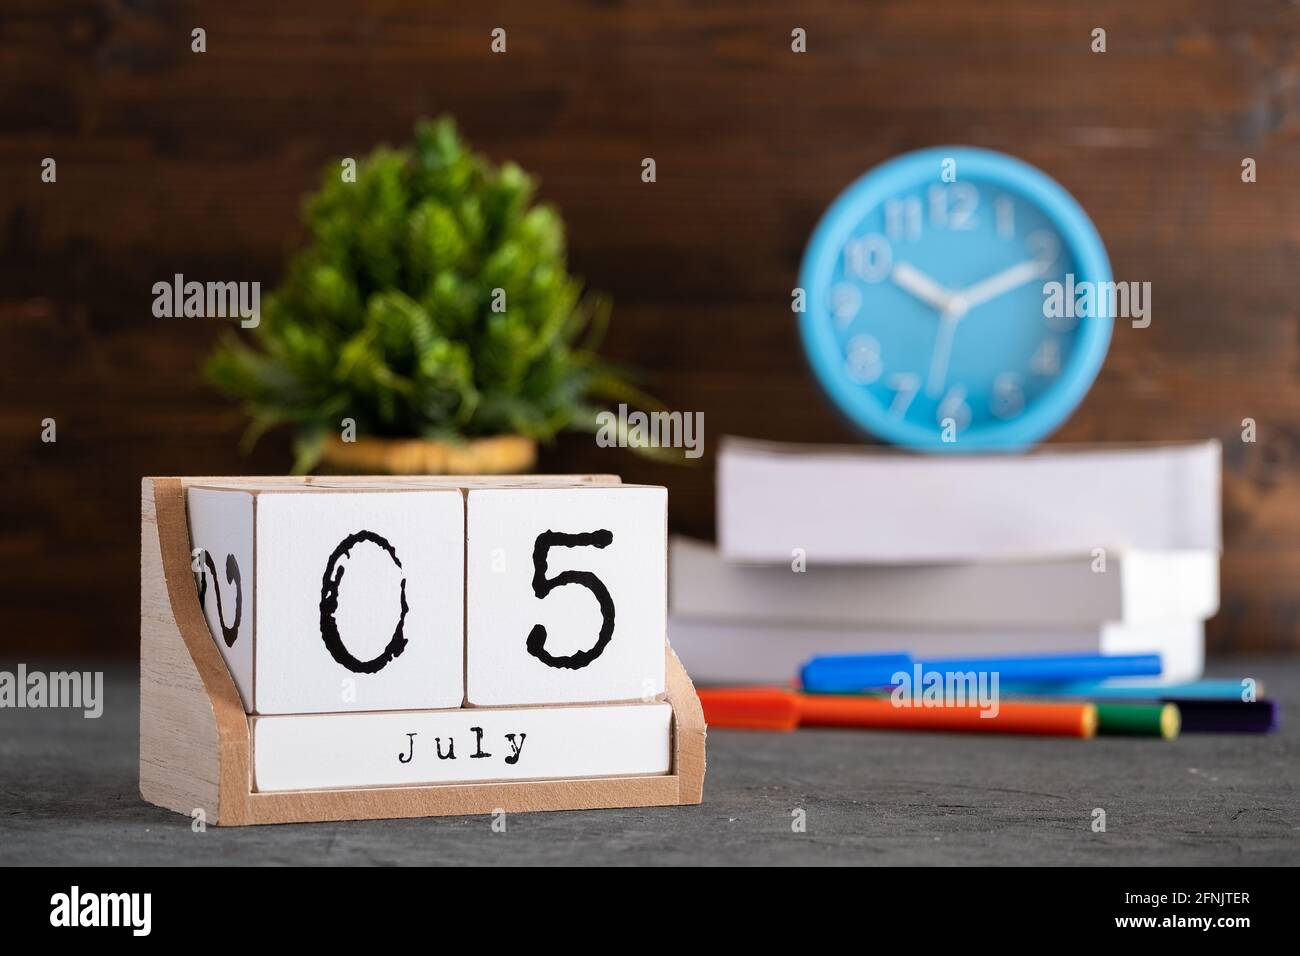 Le 05 juillet. Juillet 05 calendrier cube en bois avec des objets flous sur fond. Banque D'Images